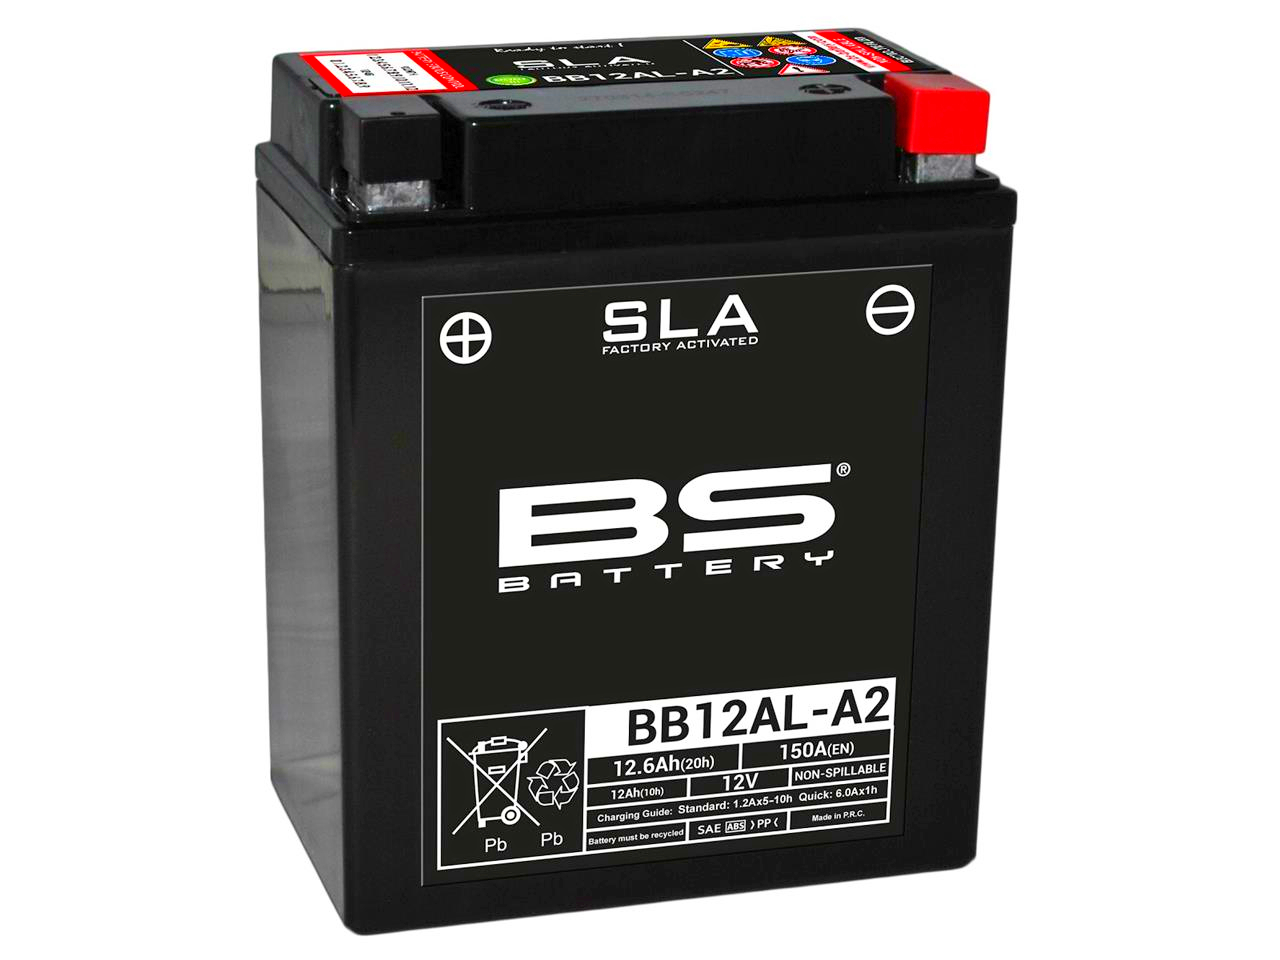 Bateria SLA 12N12A-4A1|YB12A-A|BB12AL-A2 12.6Ah 150A +134x80x160